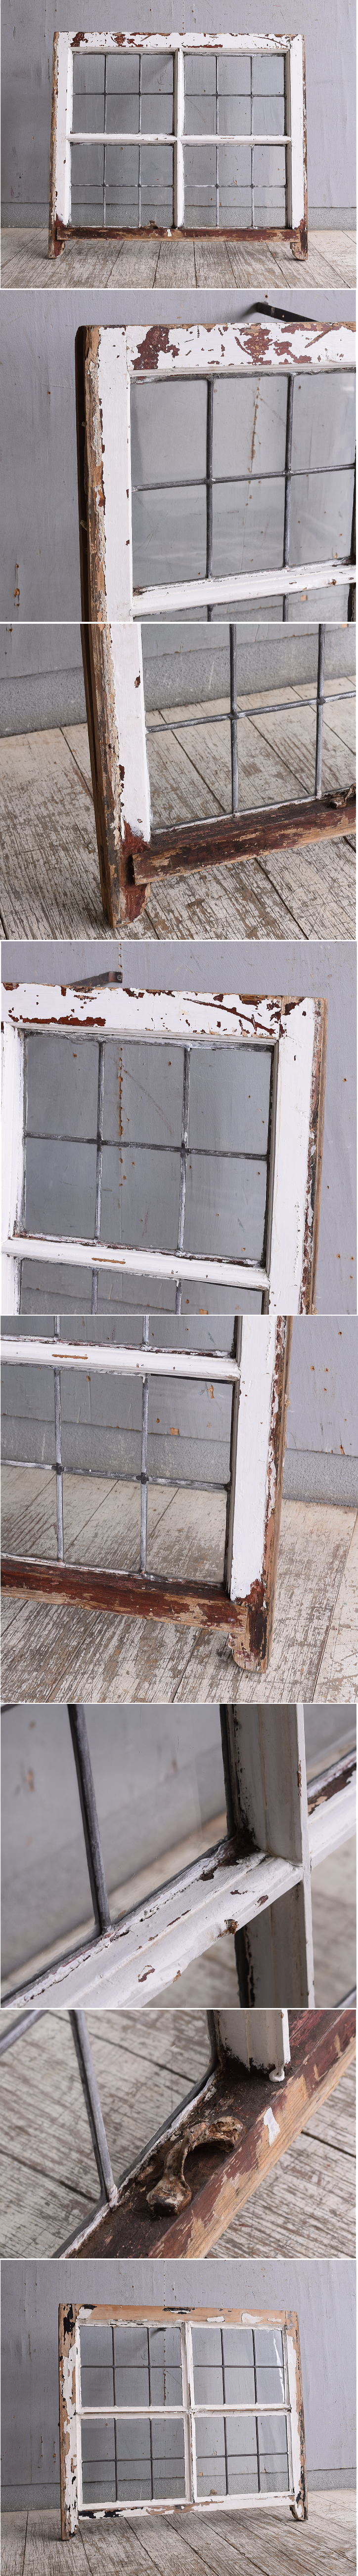 イギリス アンティーク 窓 無色透明 10765